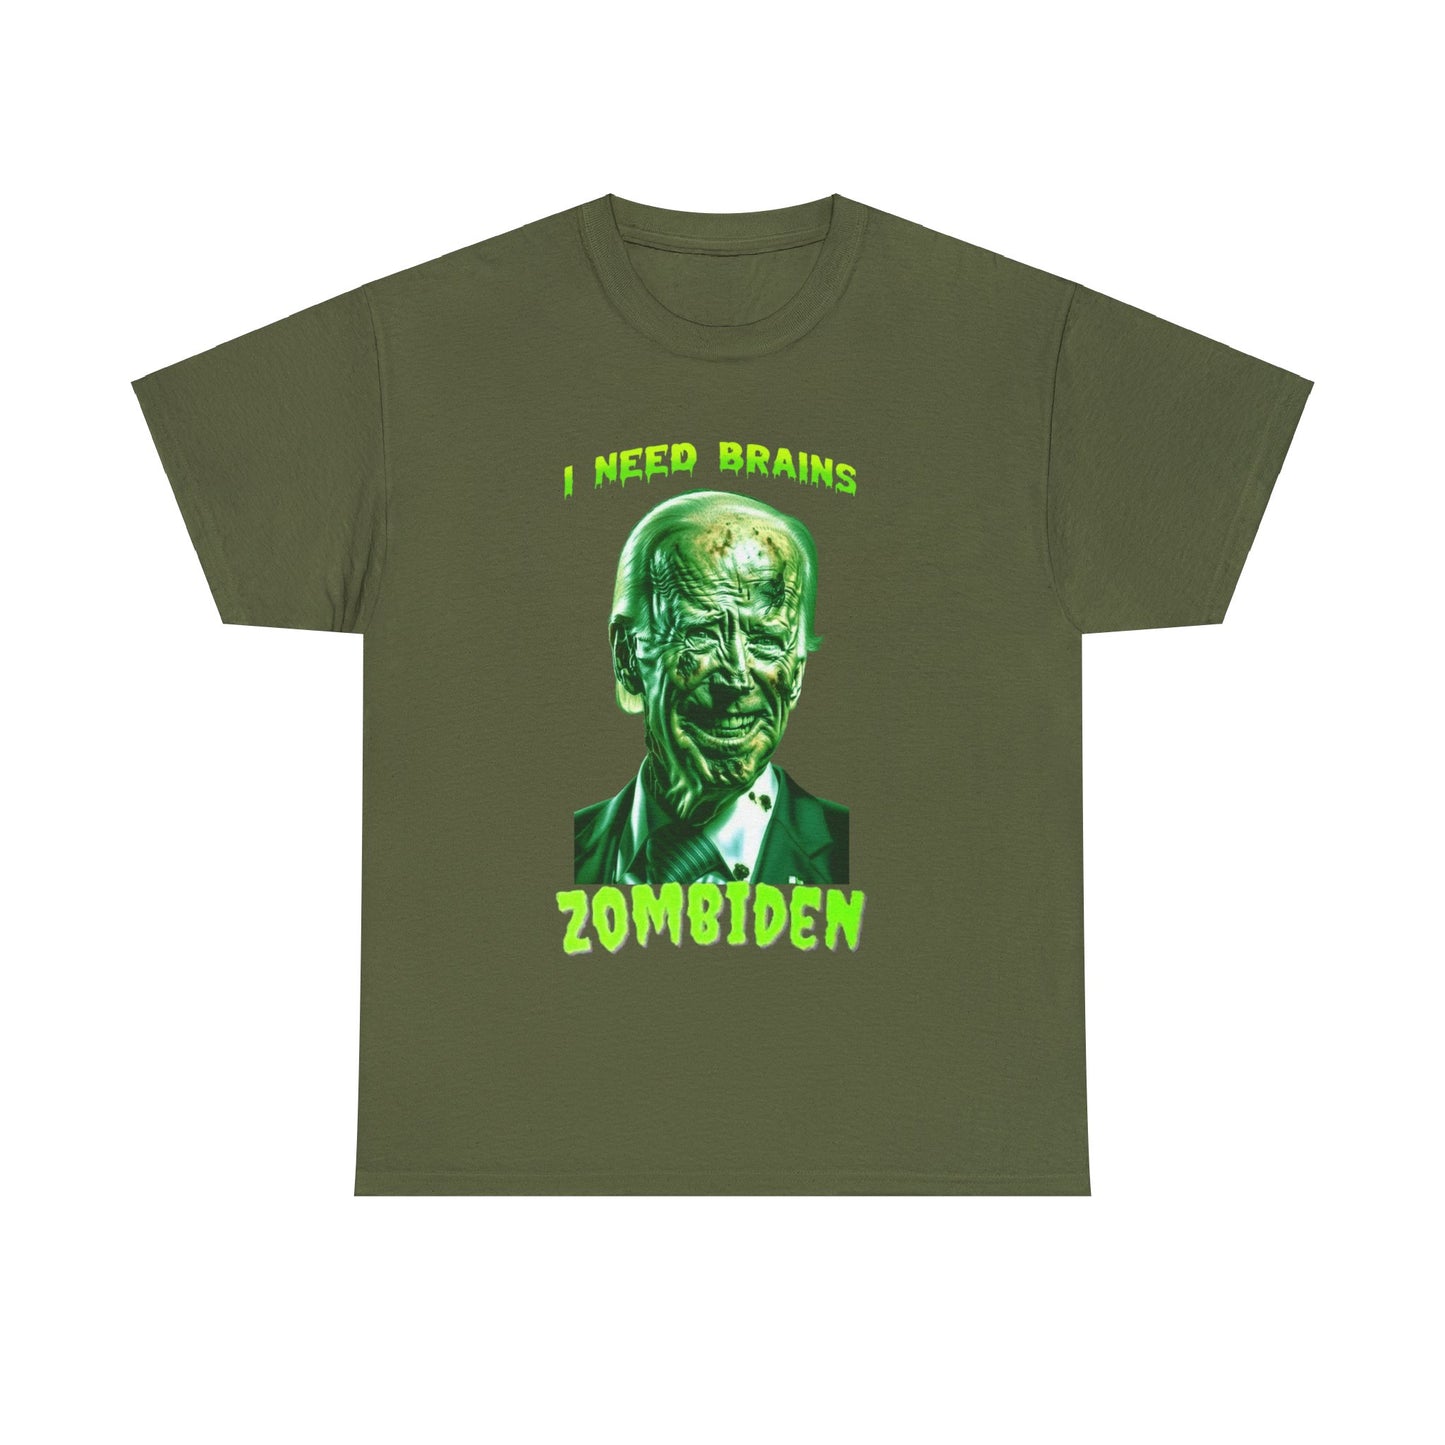 Zombiden Shirt I need Brains